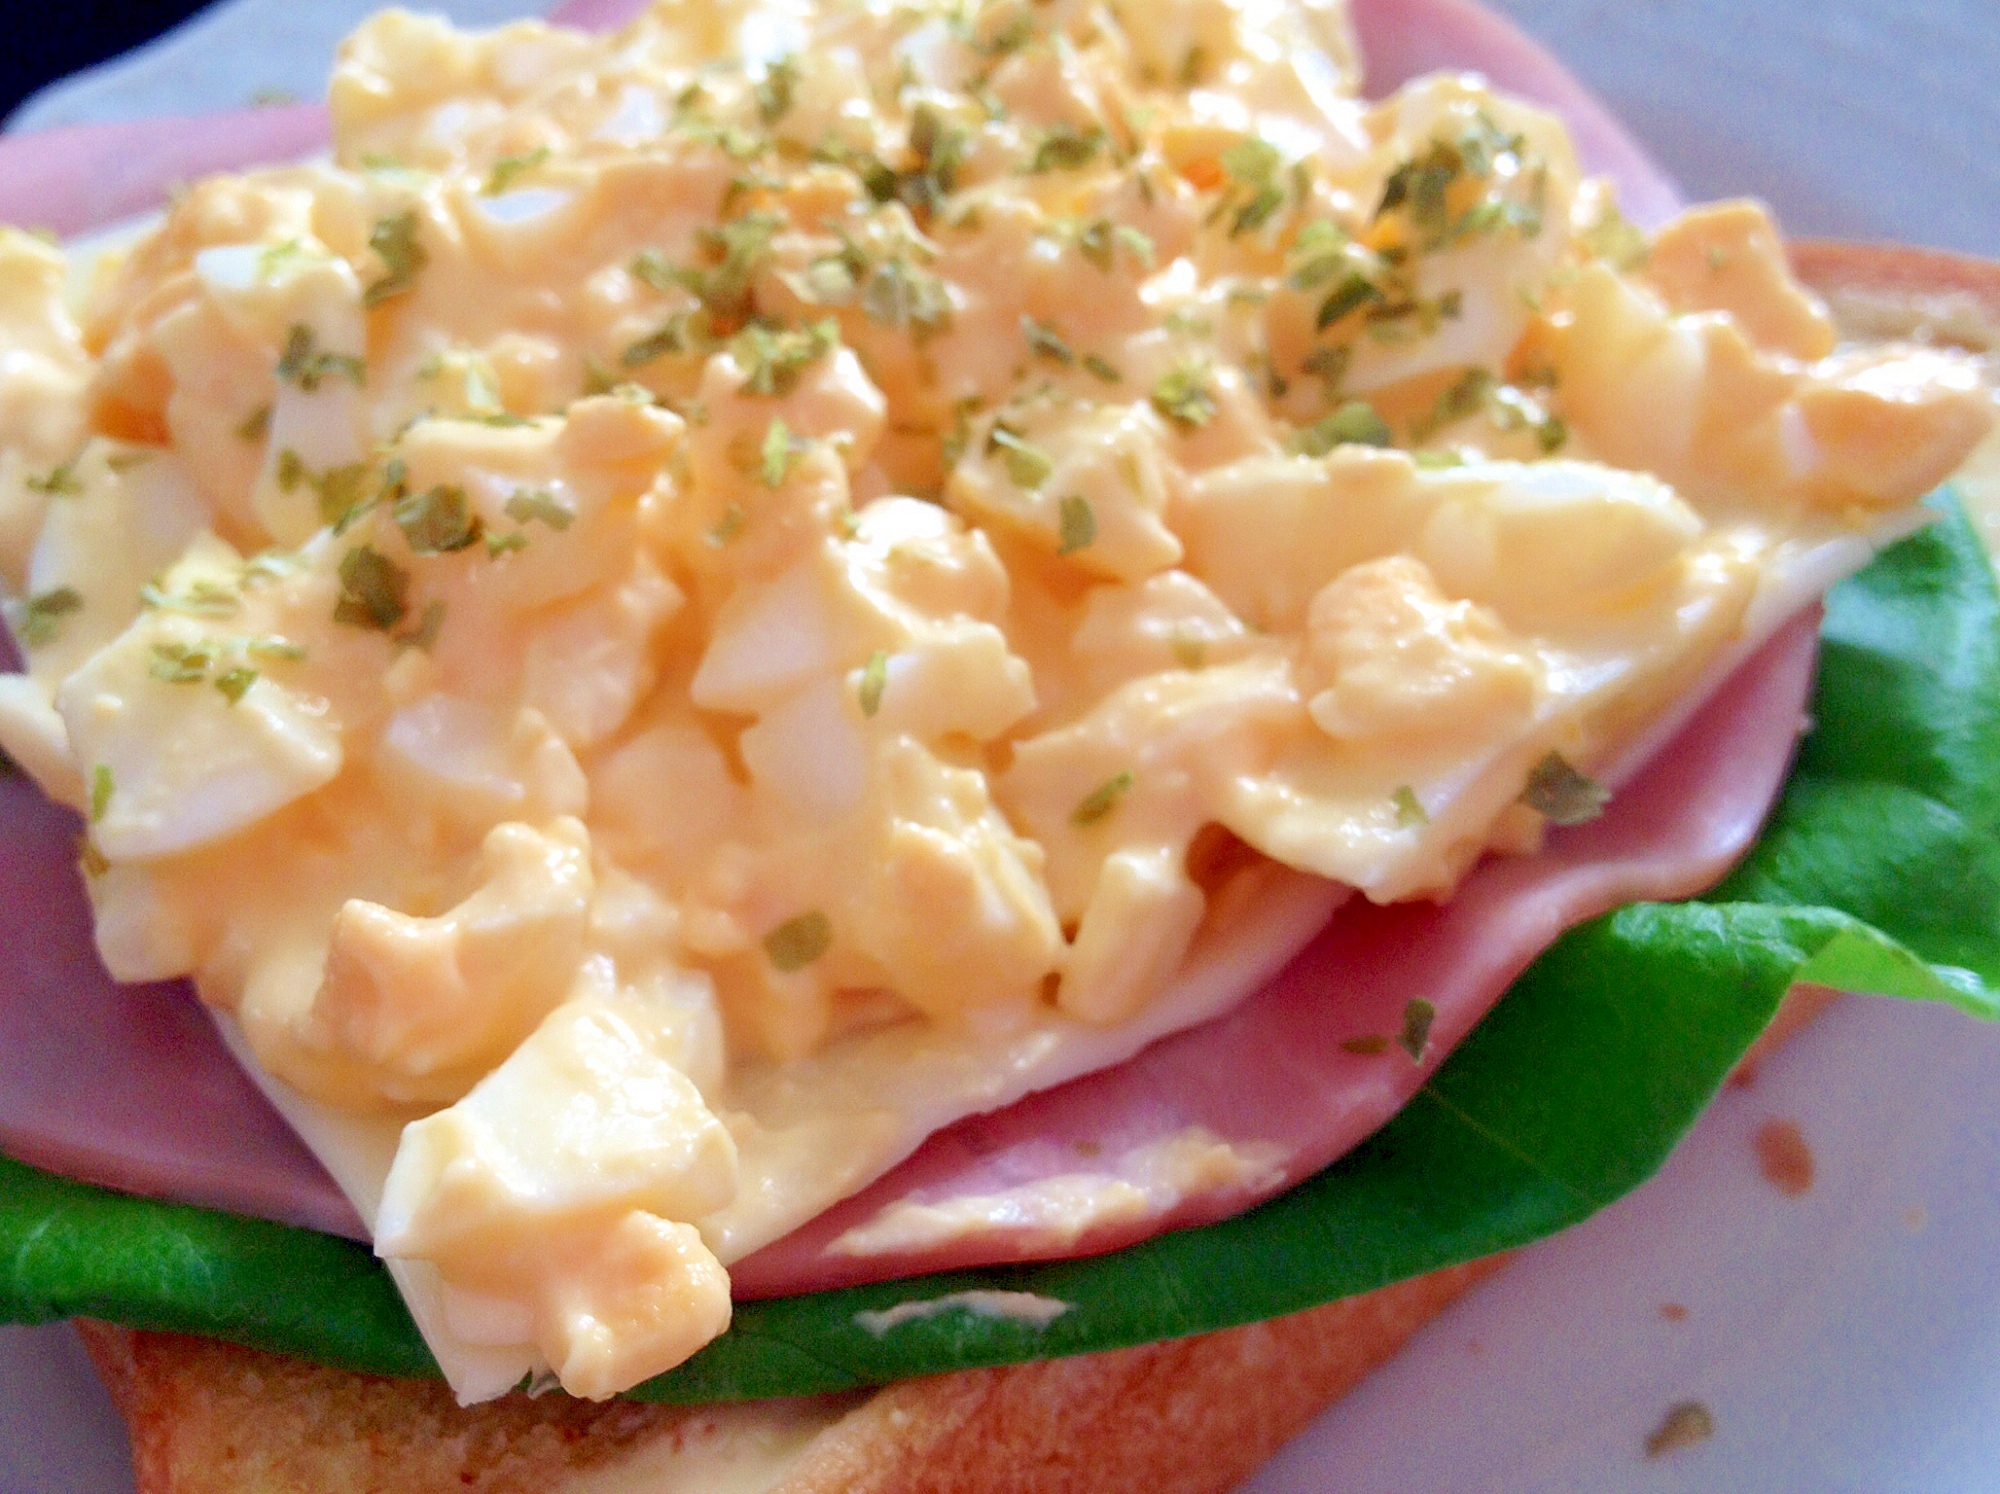 朝食に♪「卵ハムレタスのオープンサンドイッチ」